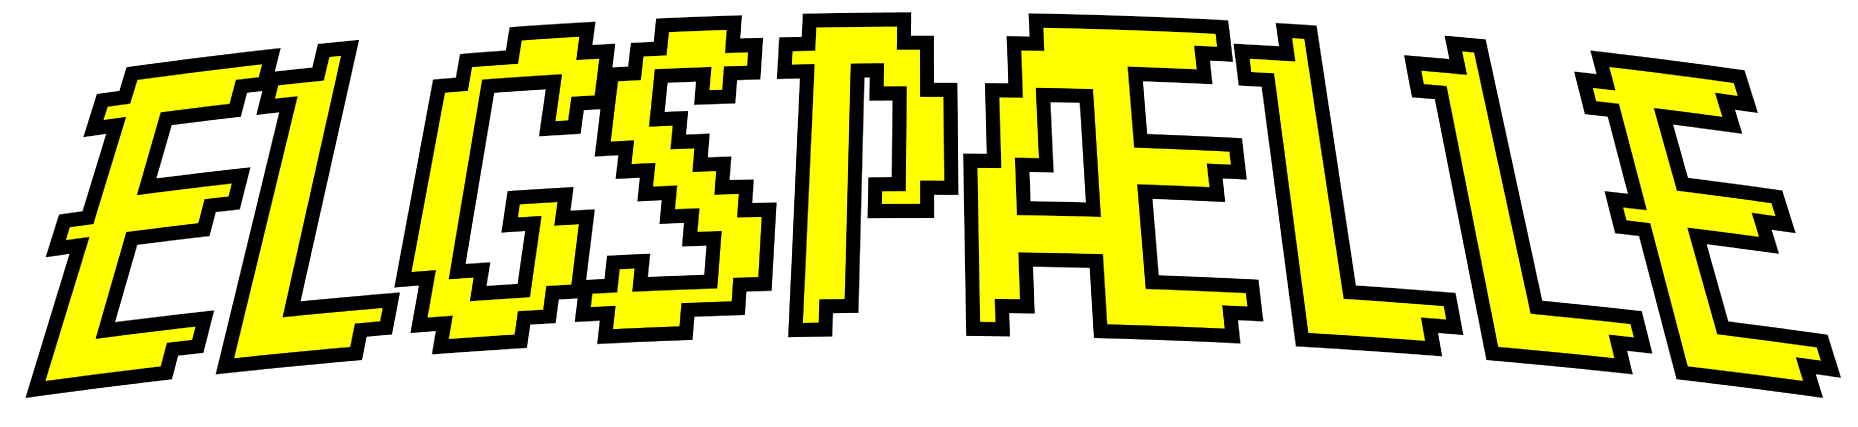 Elgspillet logo